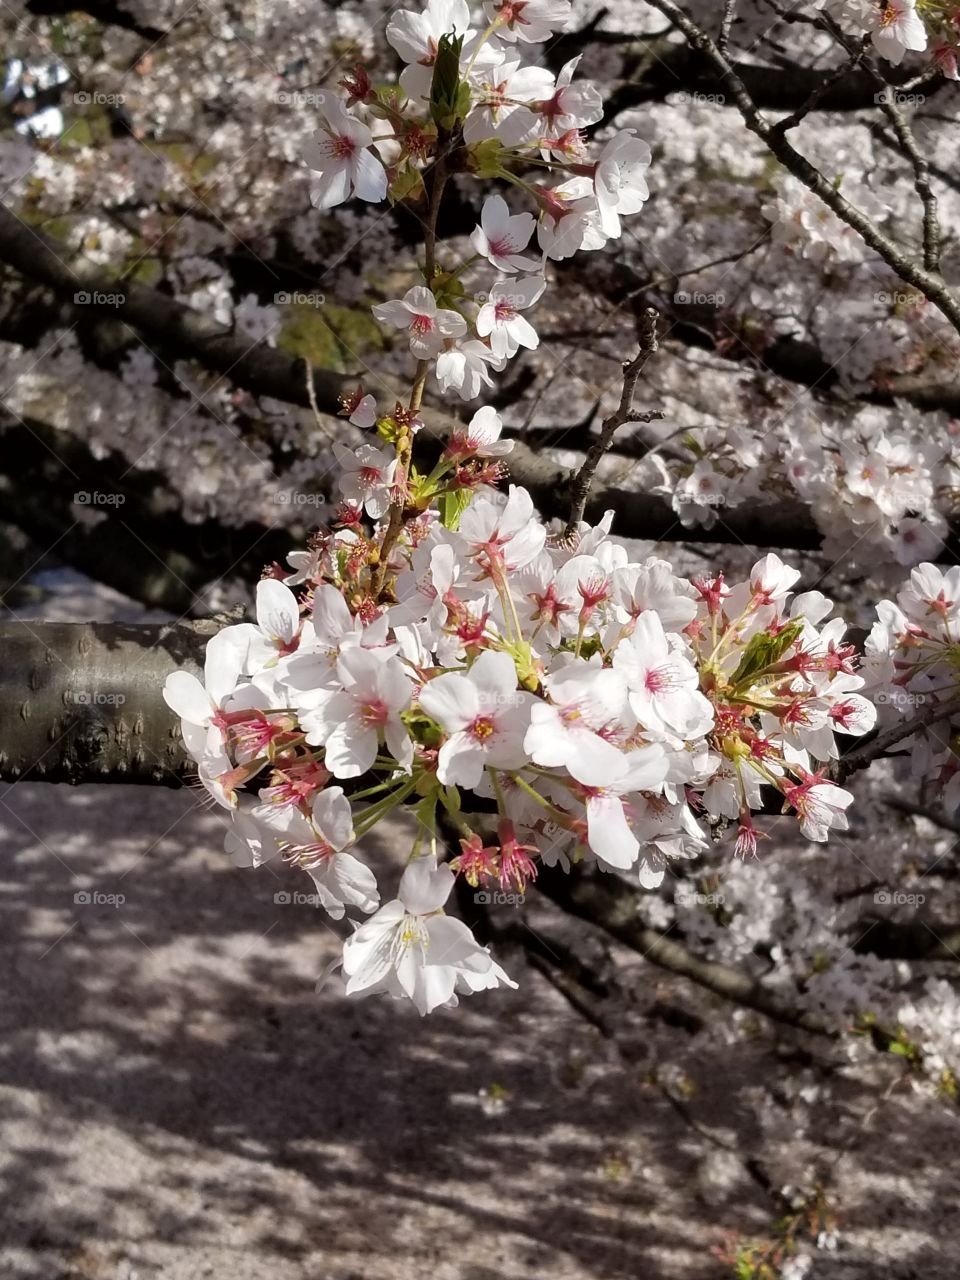 White Cherryblossoms in Japanese springtime.